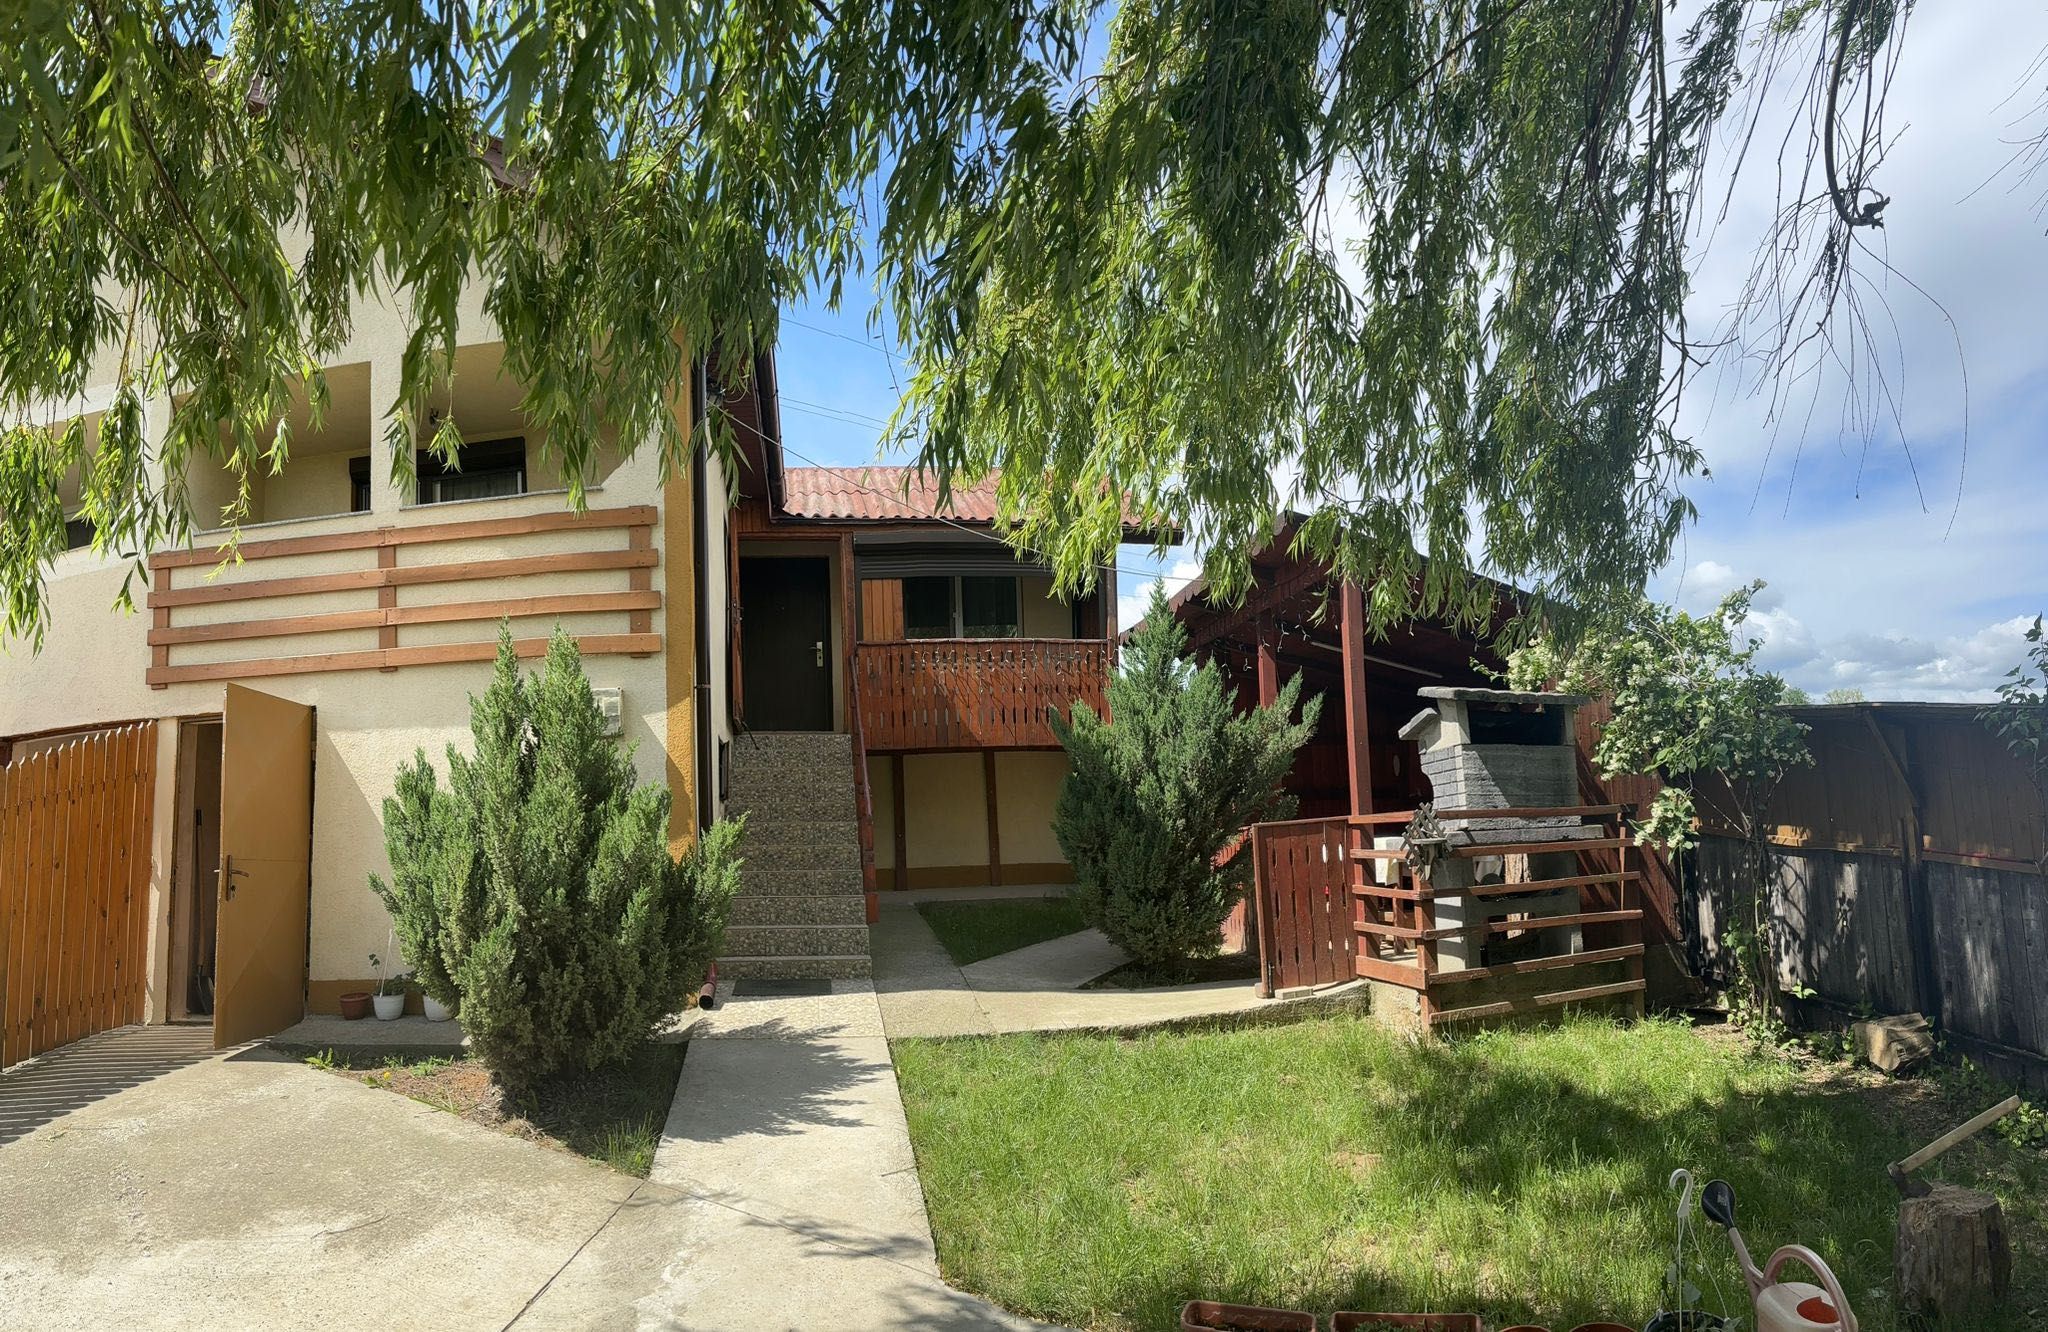 De vânzare casa în Barați la preț de apartament